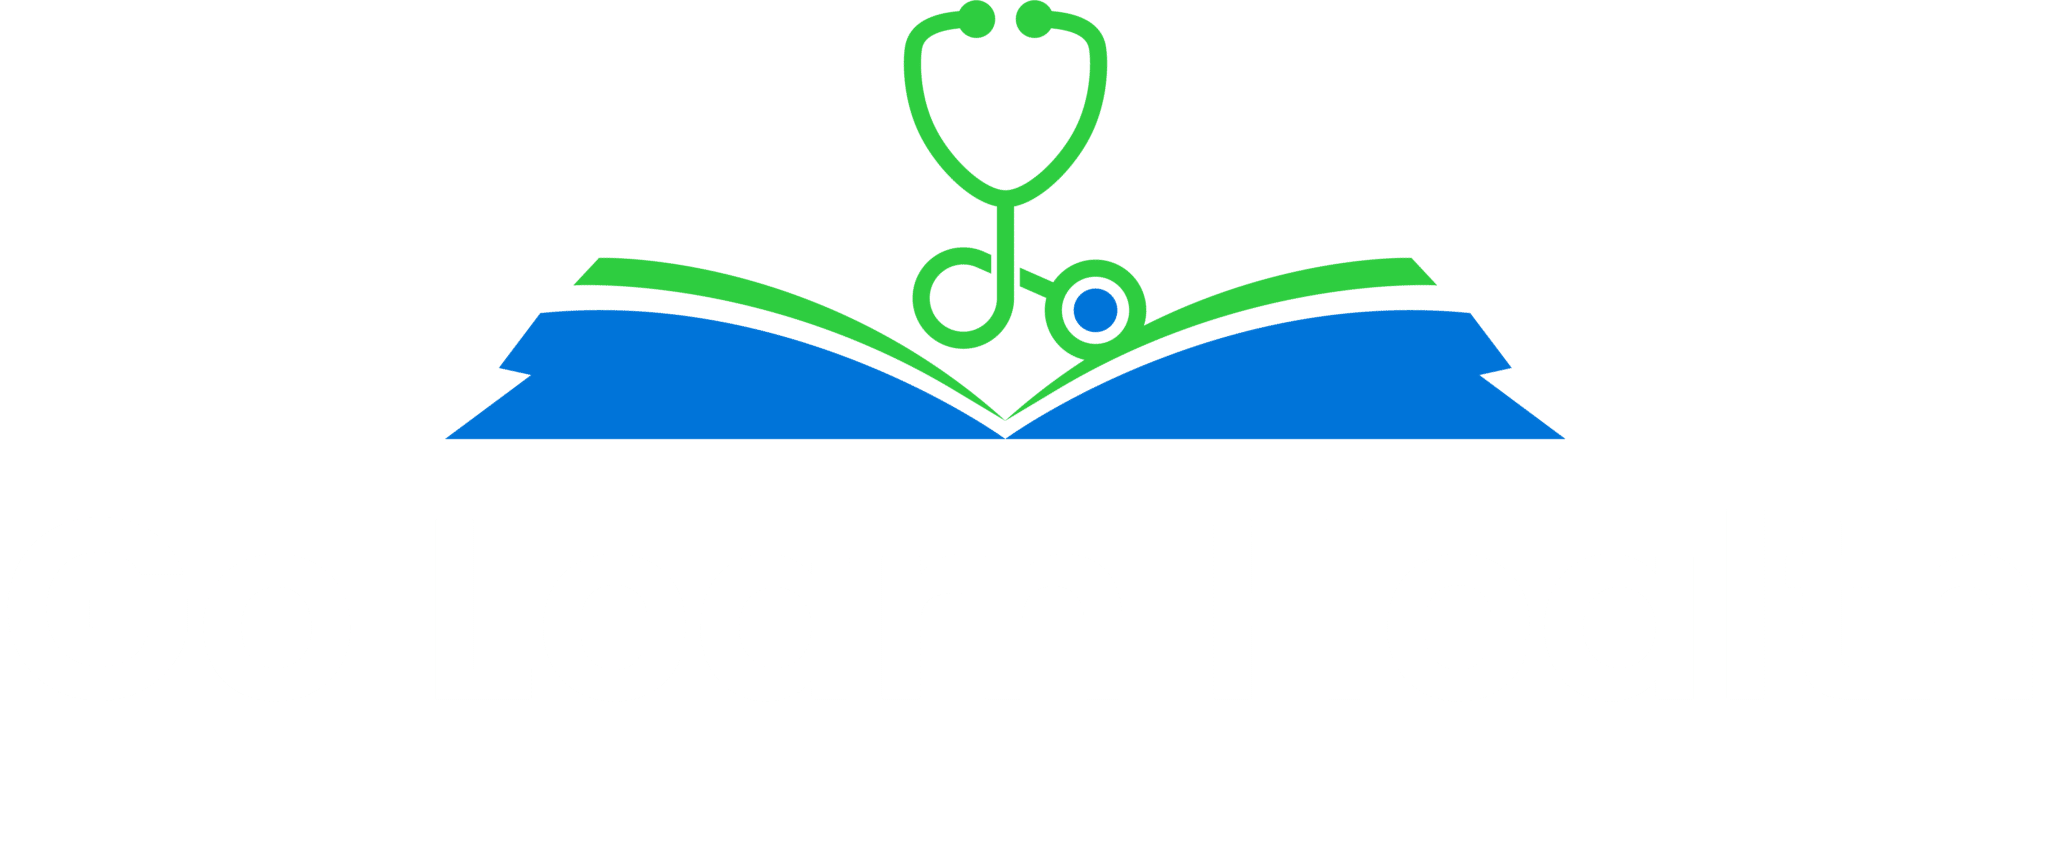 Go Learn Health